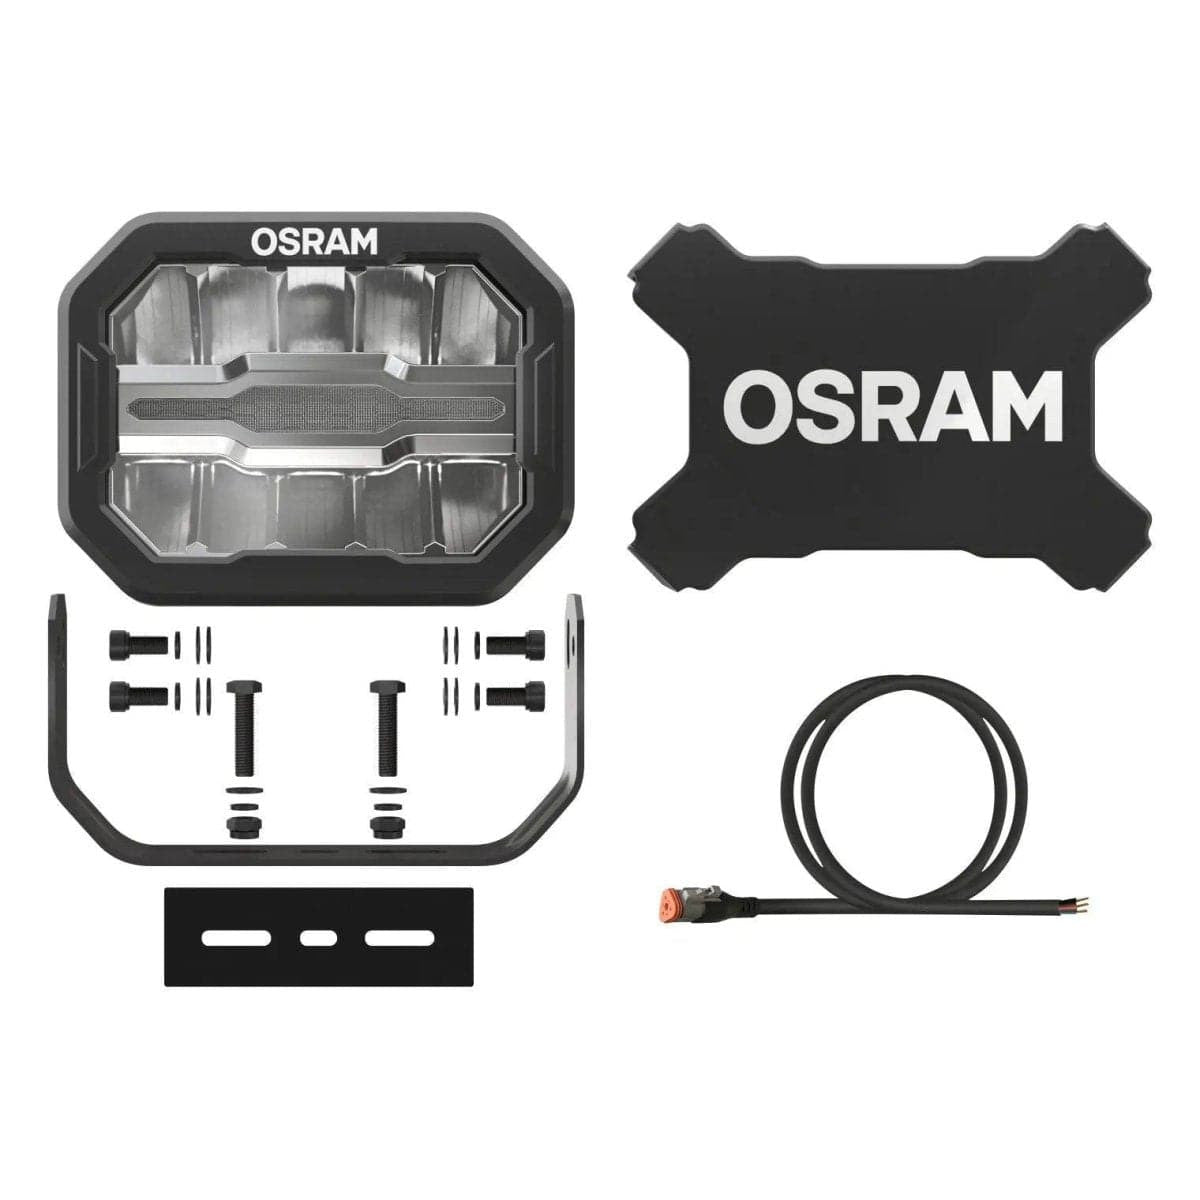 OSRAM MX240-CB LEDDL113-CB - VanBro.de